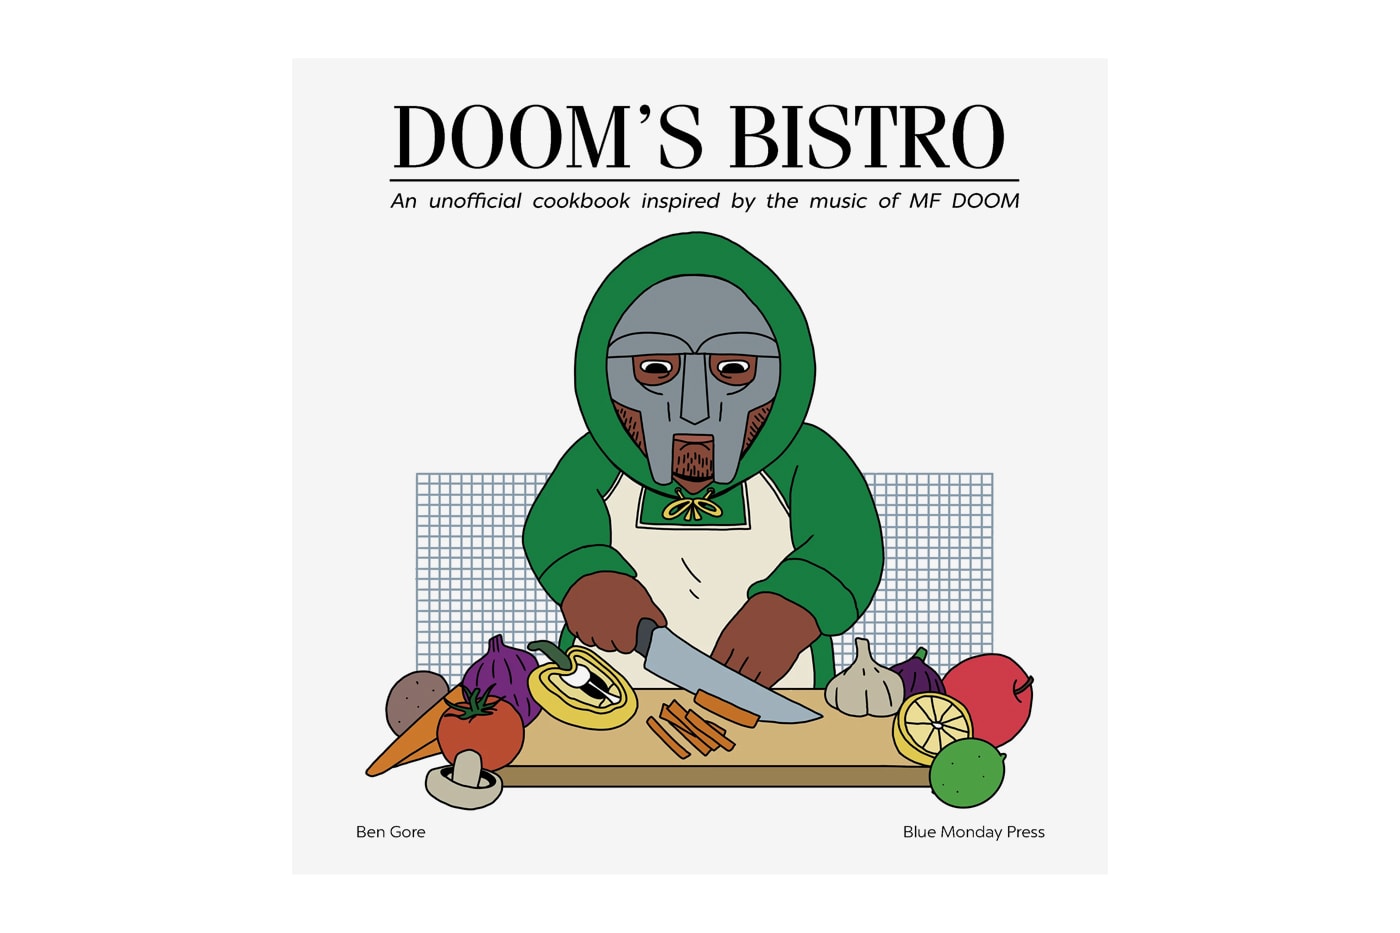 blue monday press MF DOOM DOOM’S BISTRO unofficial Cookbook Release Info